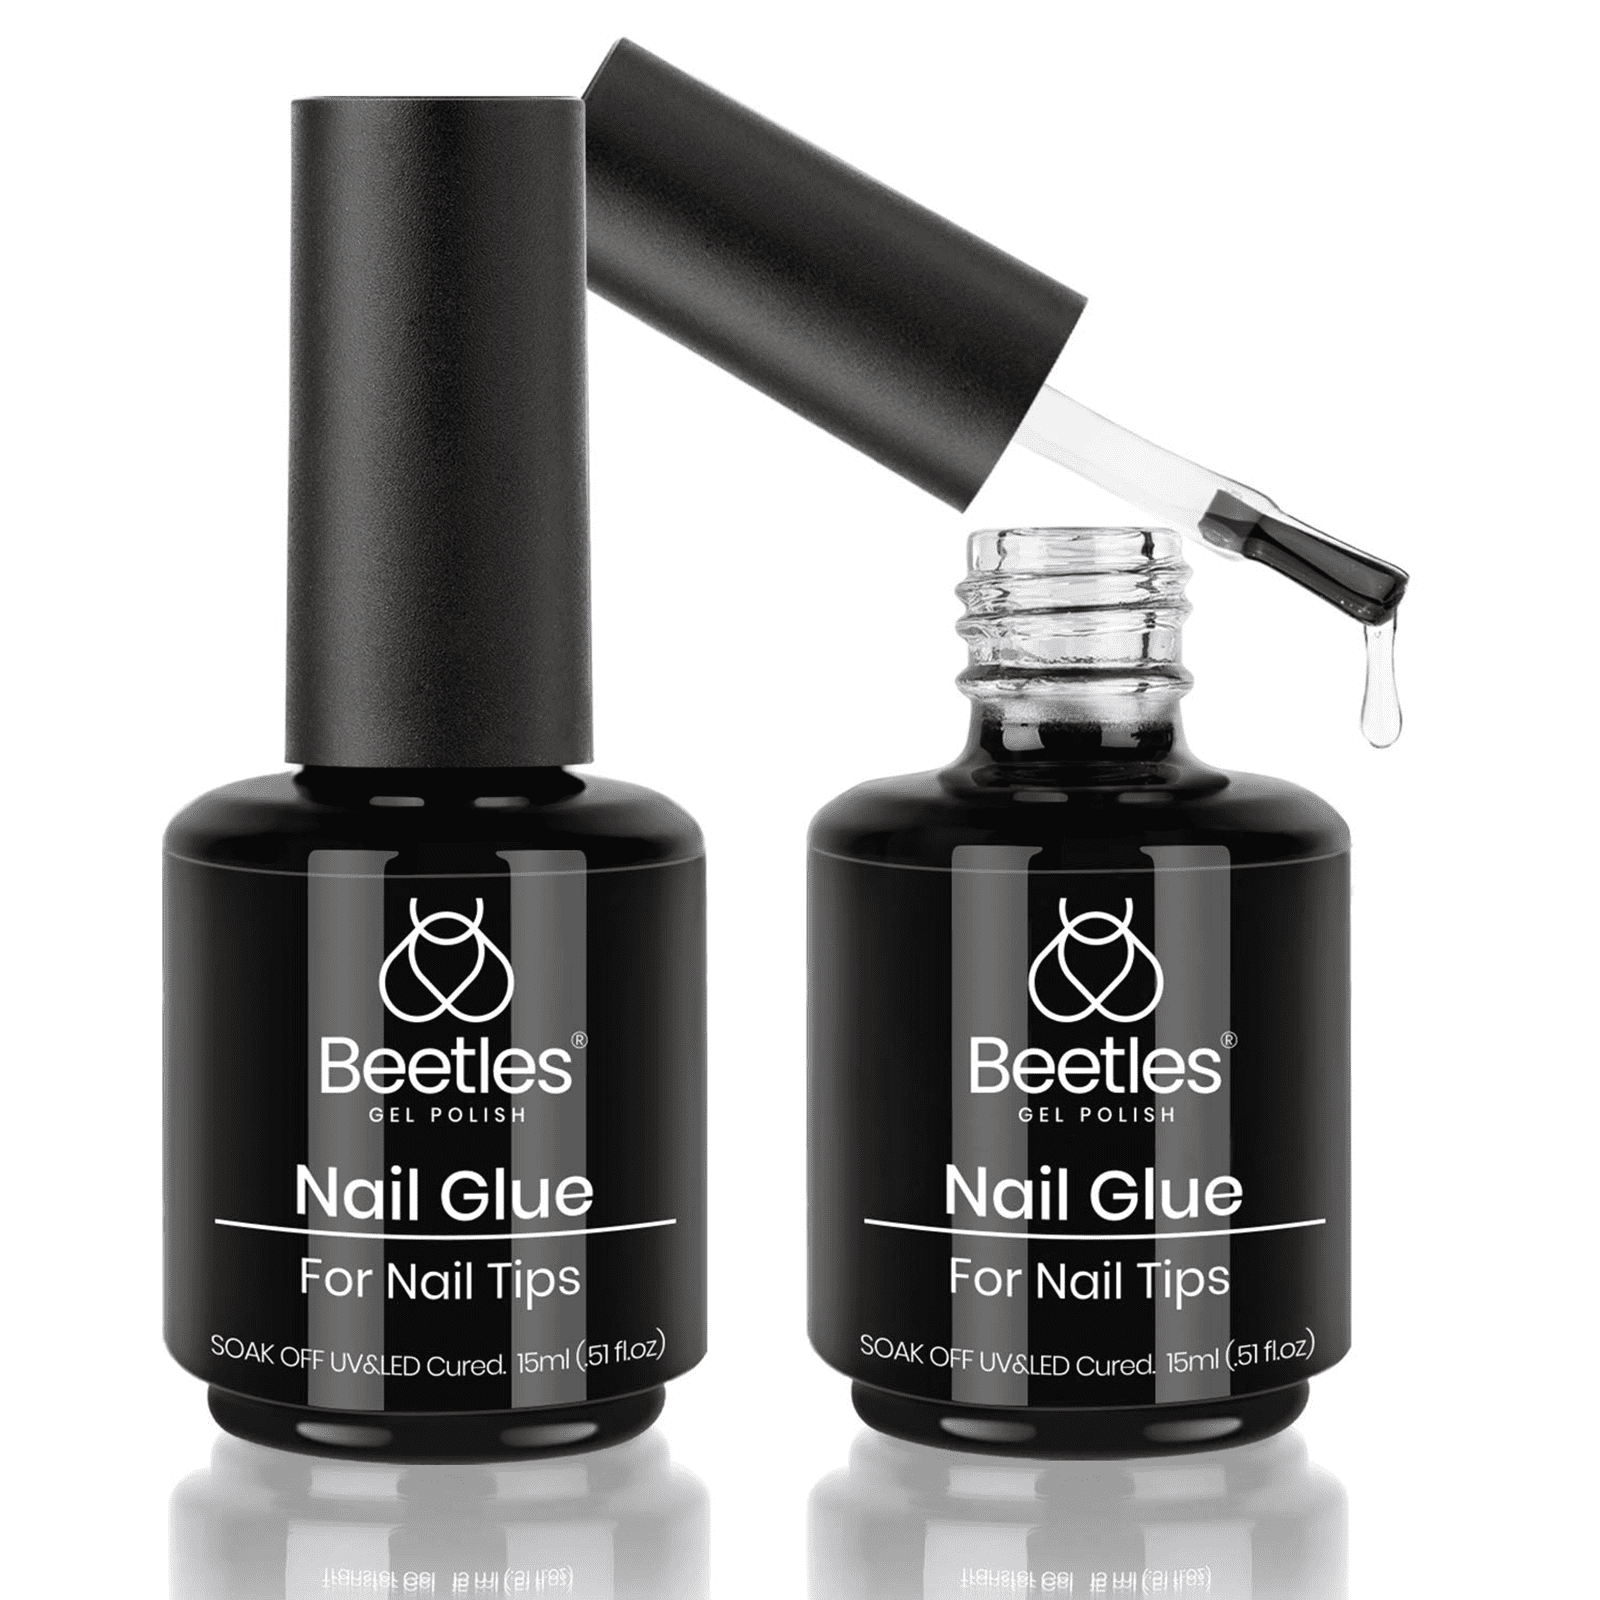 AIBRIT Nail Tips & Glue Gel x Nail Kit,15ML 6 In 1 Nail Glue Gel and 550Pcs  Coffin Nails and Portable UV LED Lamp, Gel Extension Nail Kit Home Nail DIY  Tools